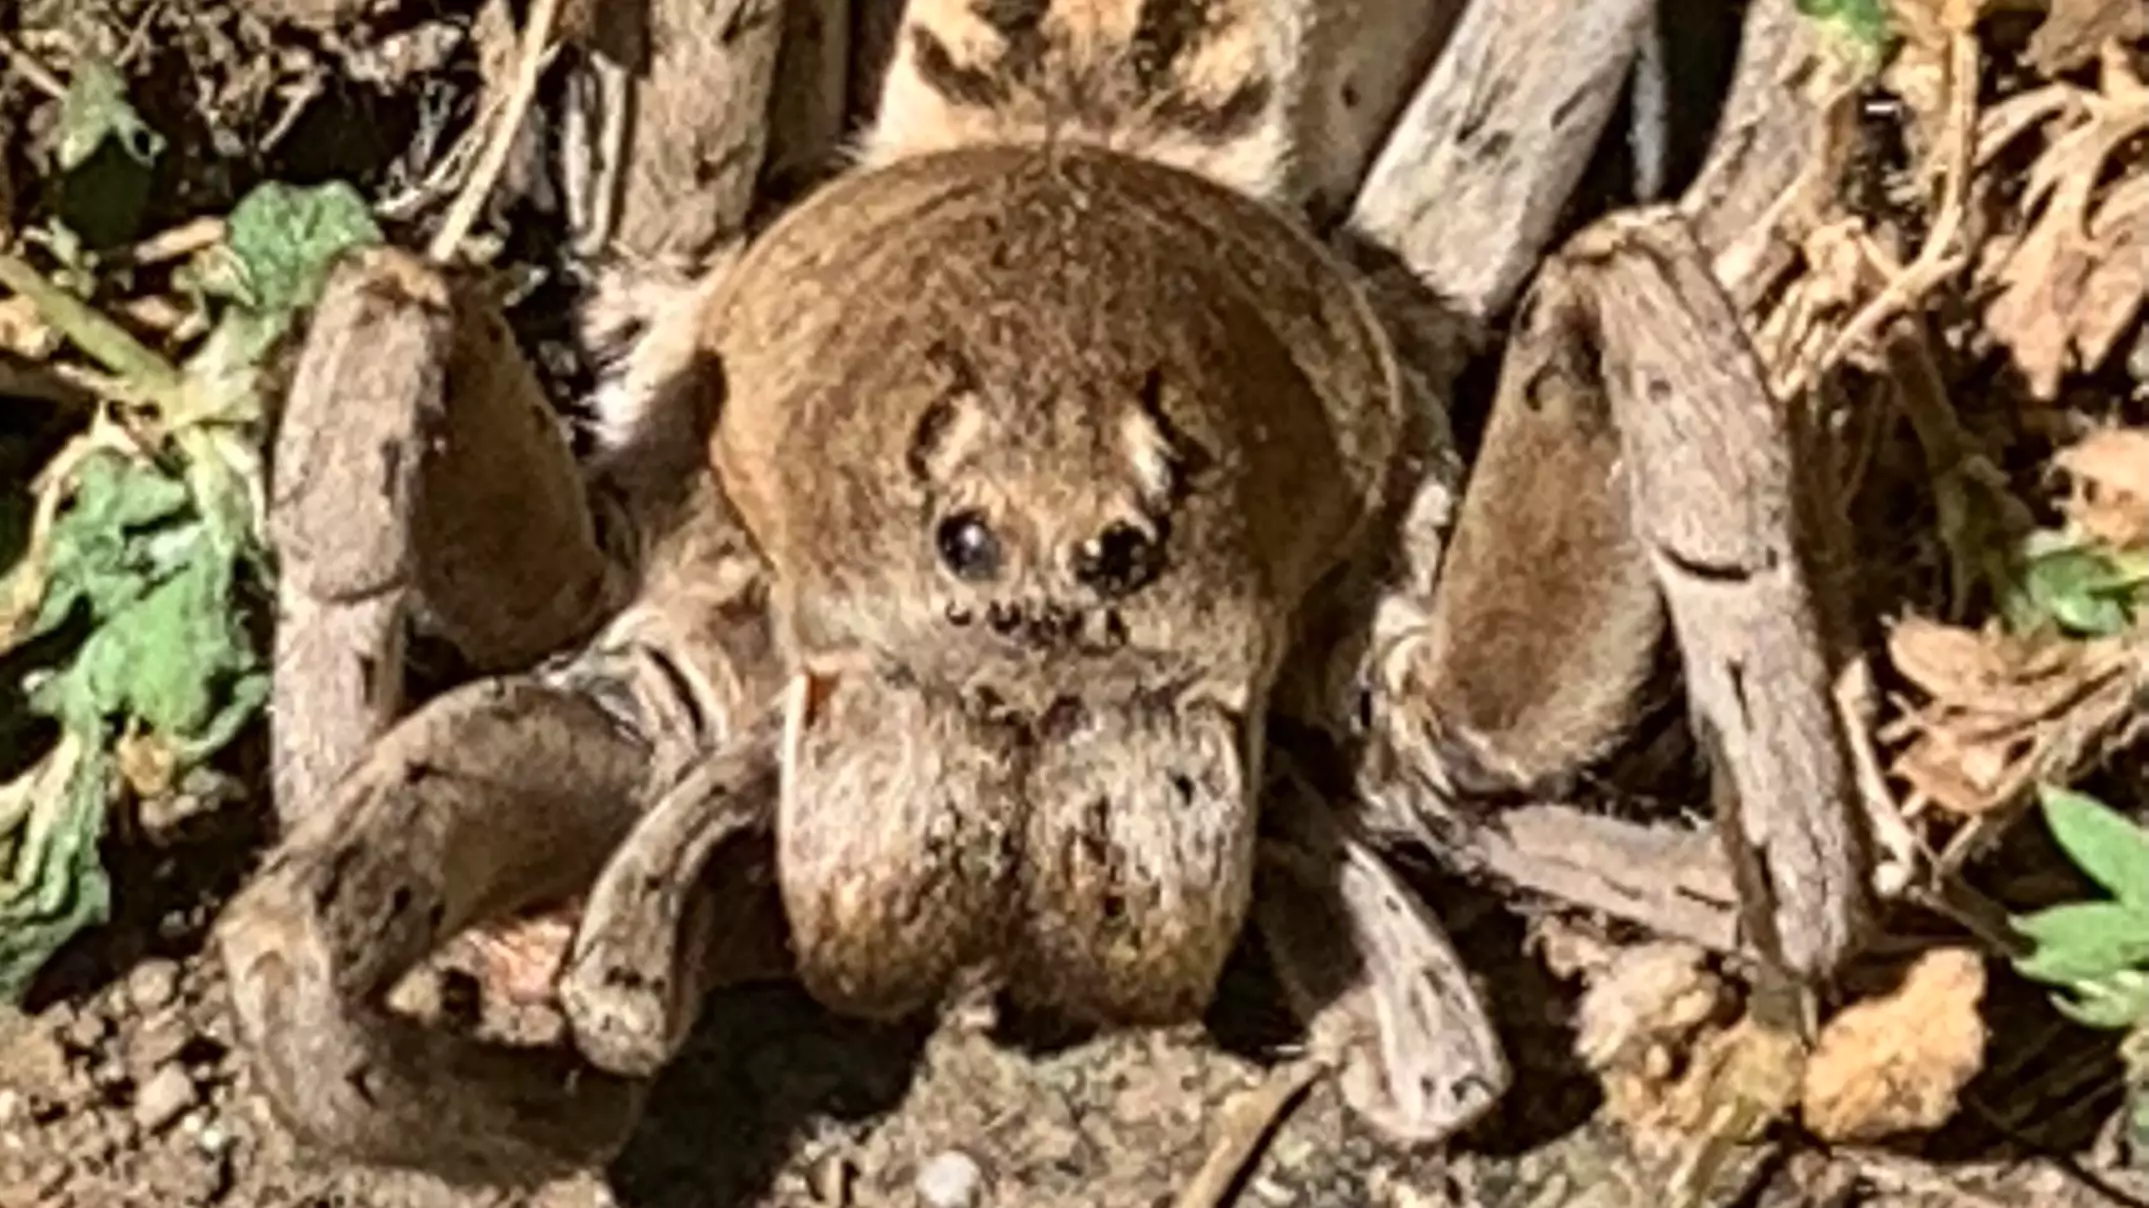 Reddit User Shares Terrifying Photo Of Back Yard Spider That Looks Like 'Aragog'